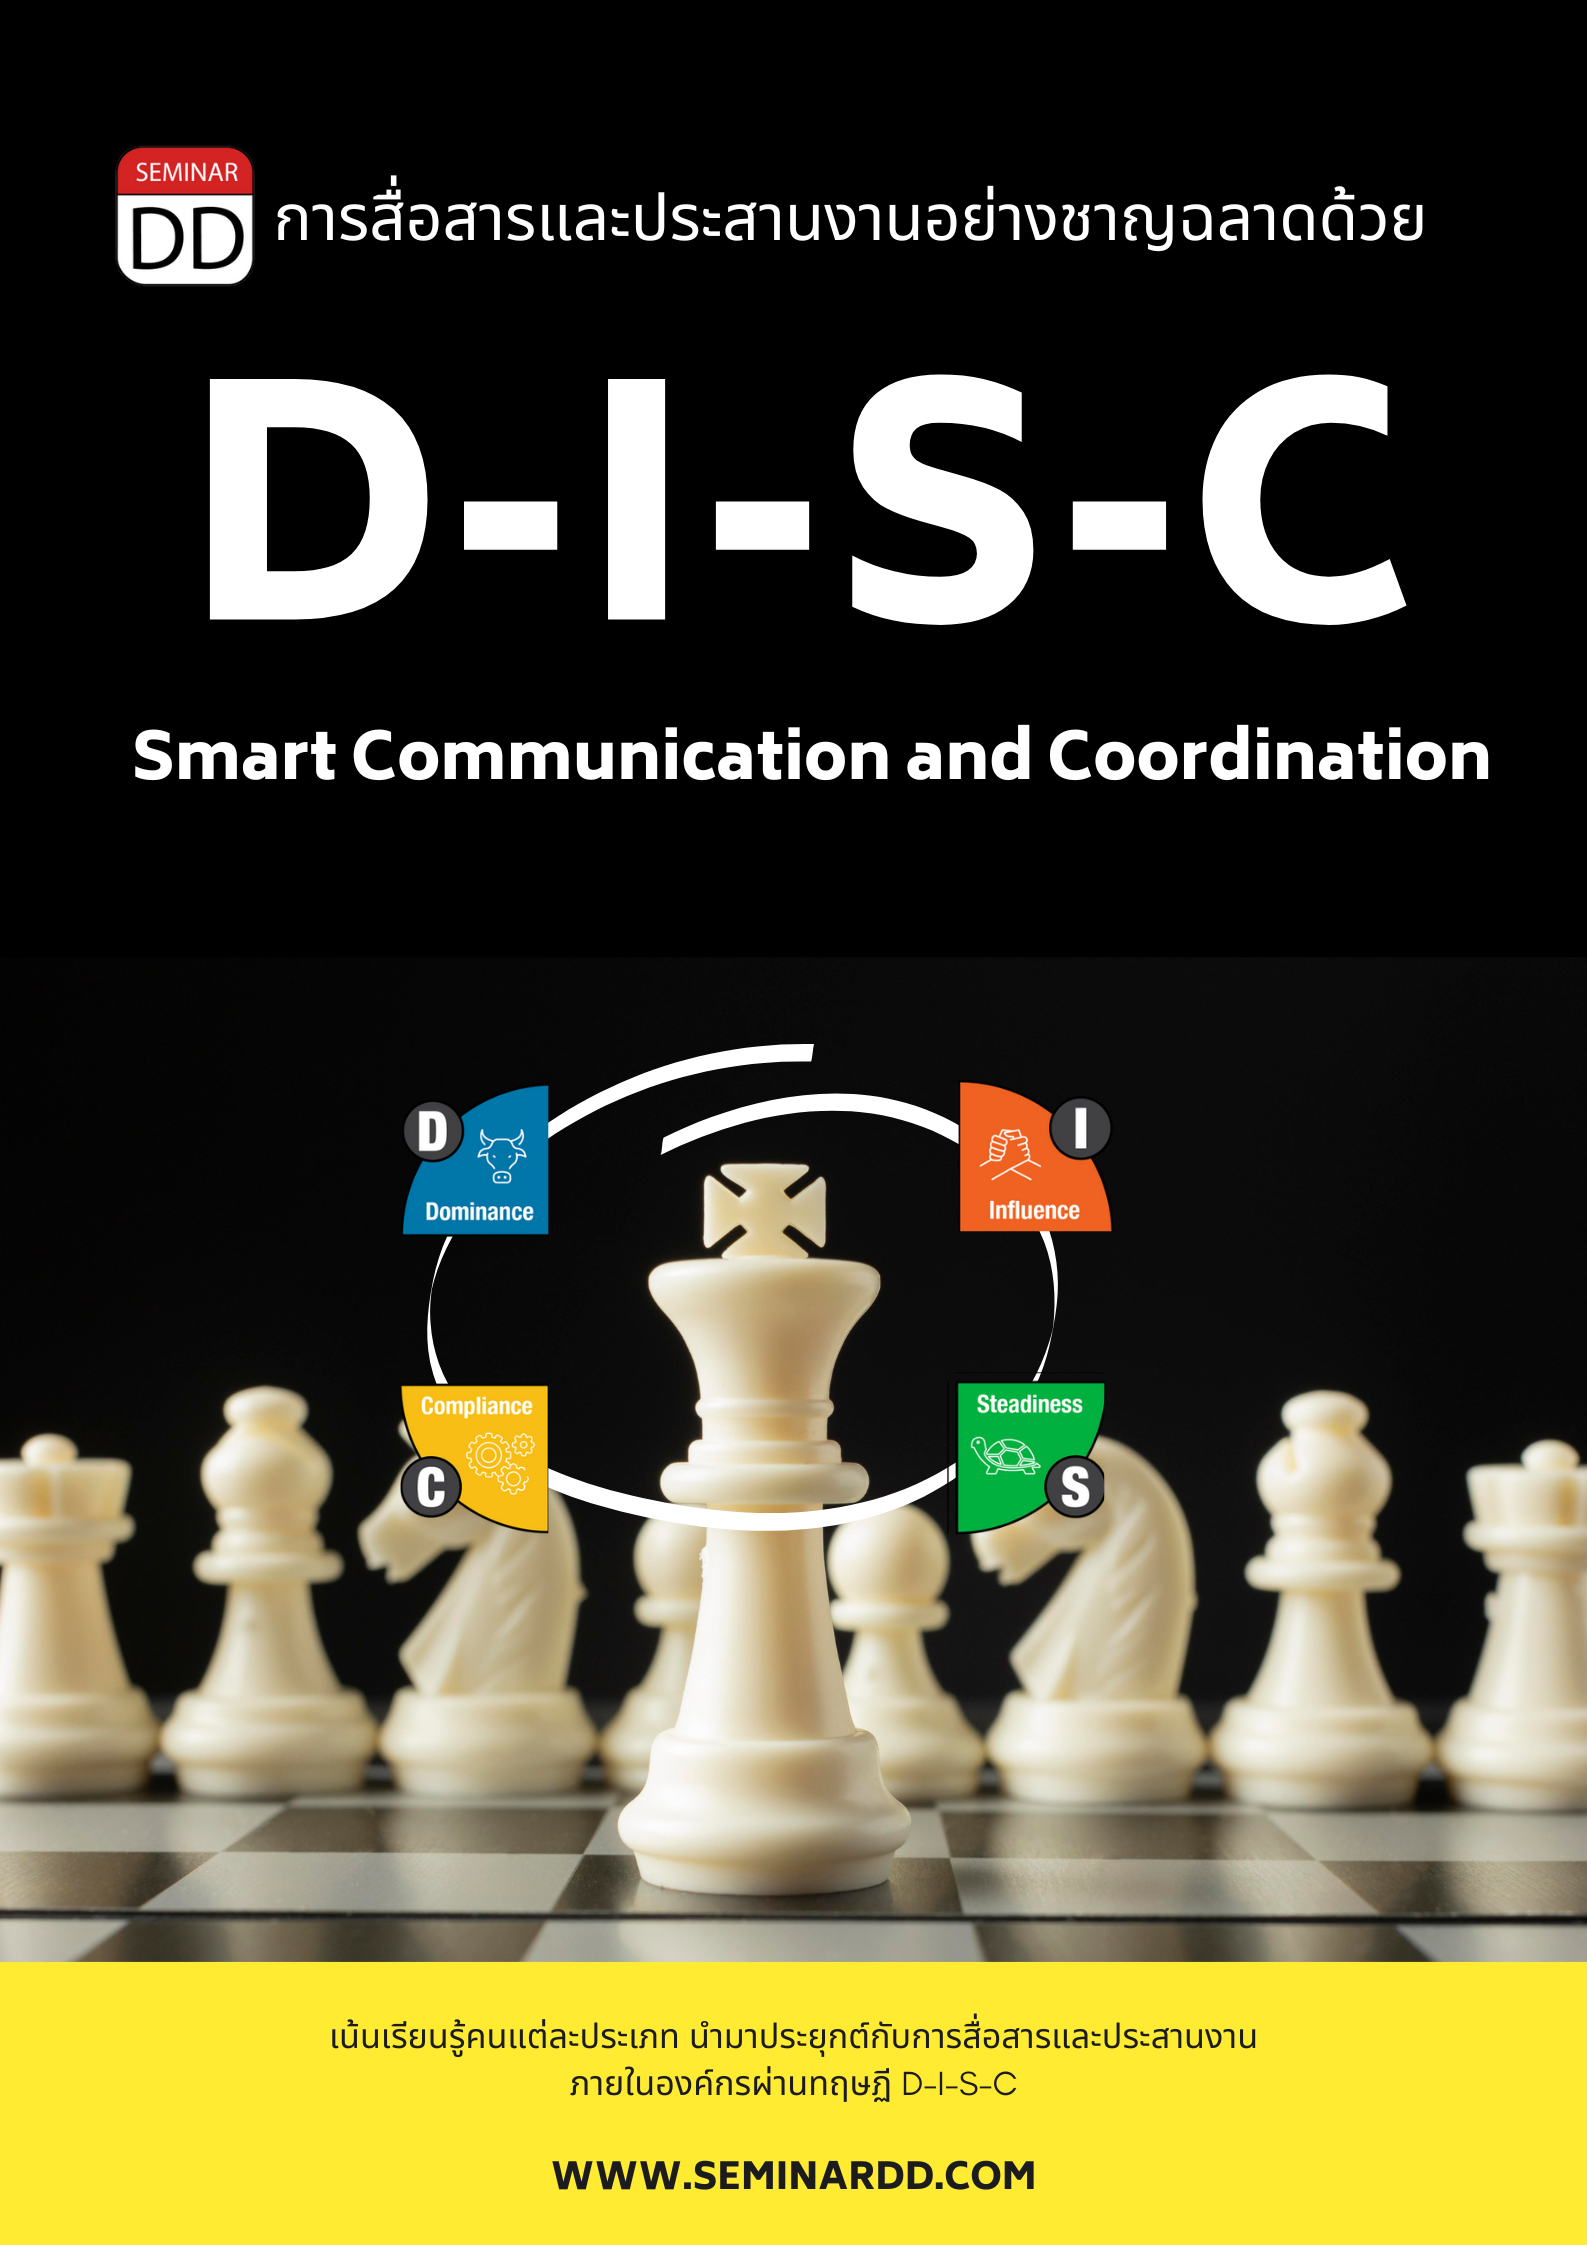 หลักสูตรอบรม หลักสูตร การสื่อสารและประสานงานอย่างชาญฉลาดด้วย DISC (Smart Communication and Coordination with DISC)